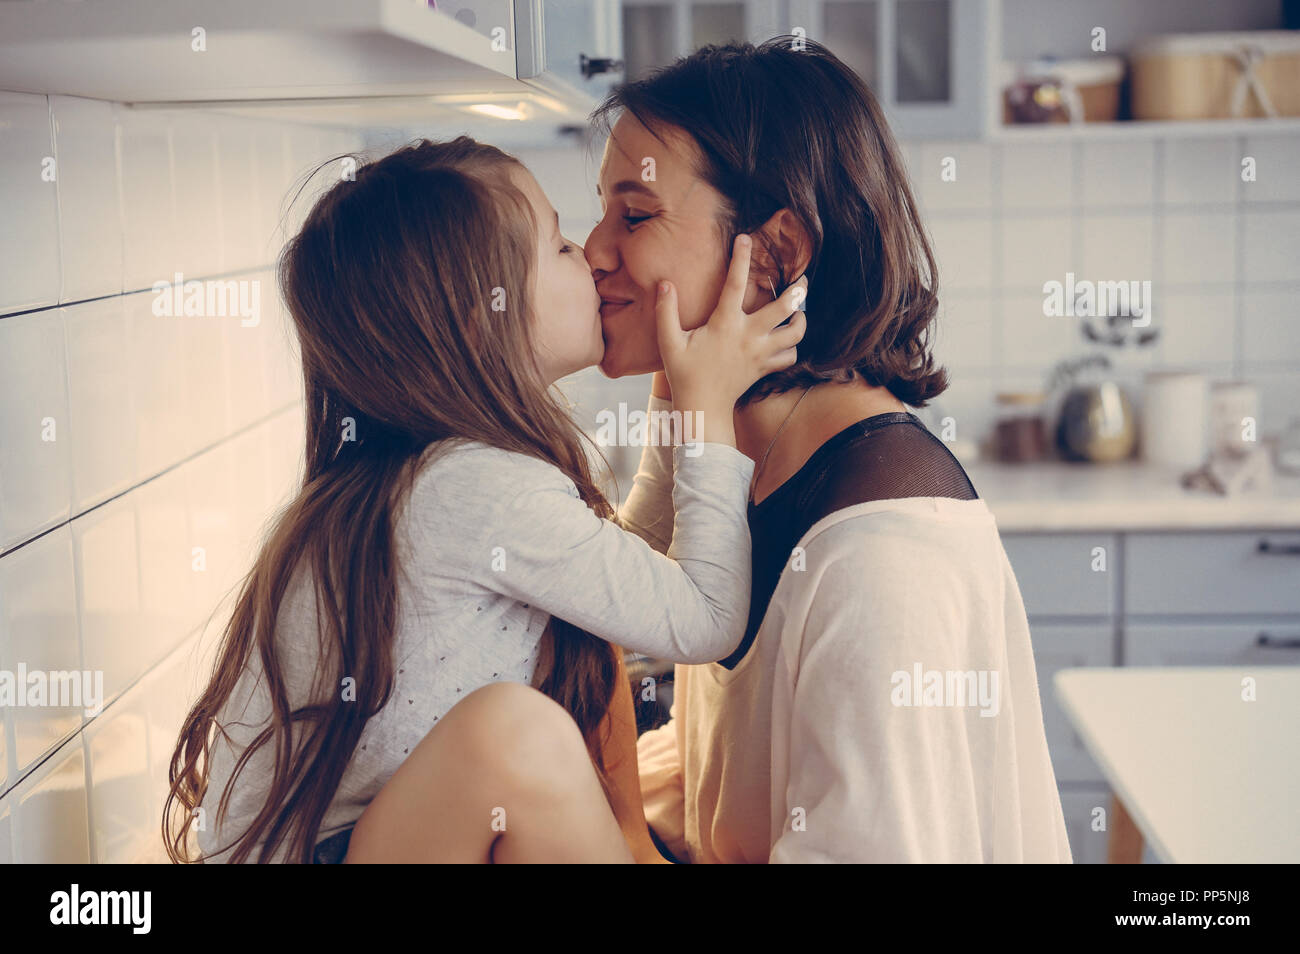 Лизбиянки перевод русский. Мама с дочкой поцелуй. Мама целует дочь. Молодые лесбияночки на кухне. Мать и дочь поцелуй с языком.